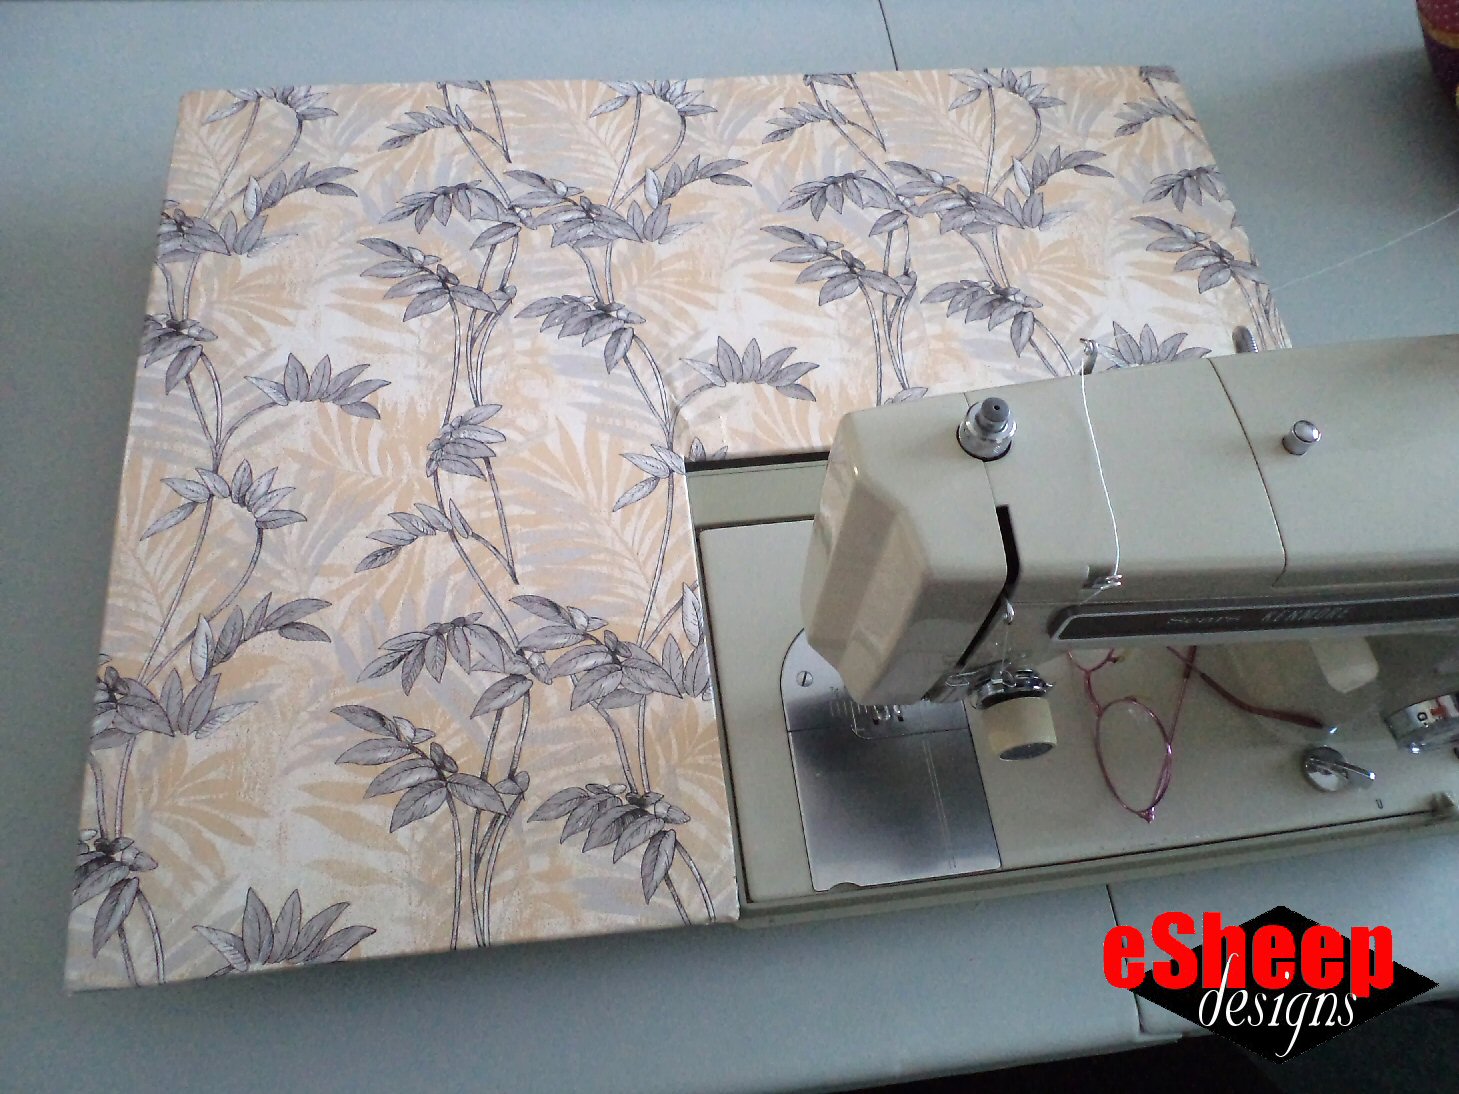 Hoja de transfer Home Decor Sewing Machine de Cadence, 25 x 35